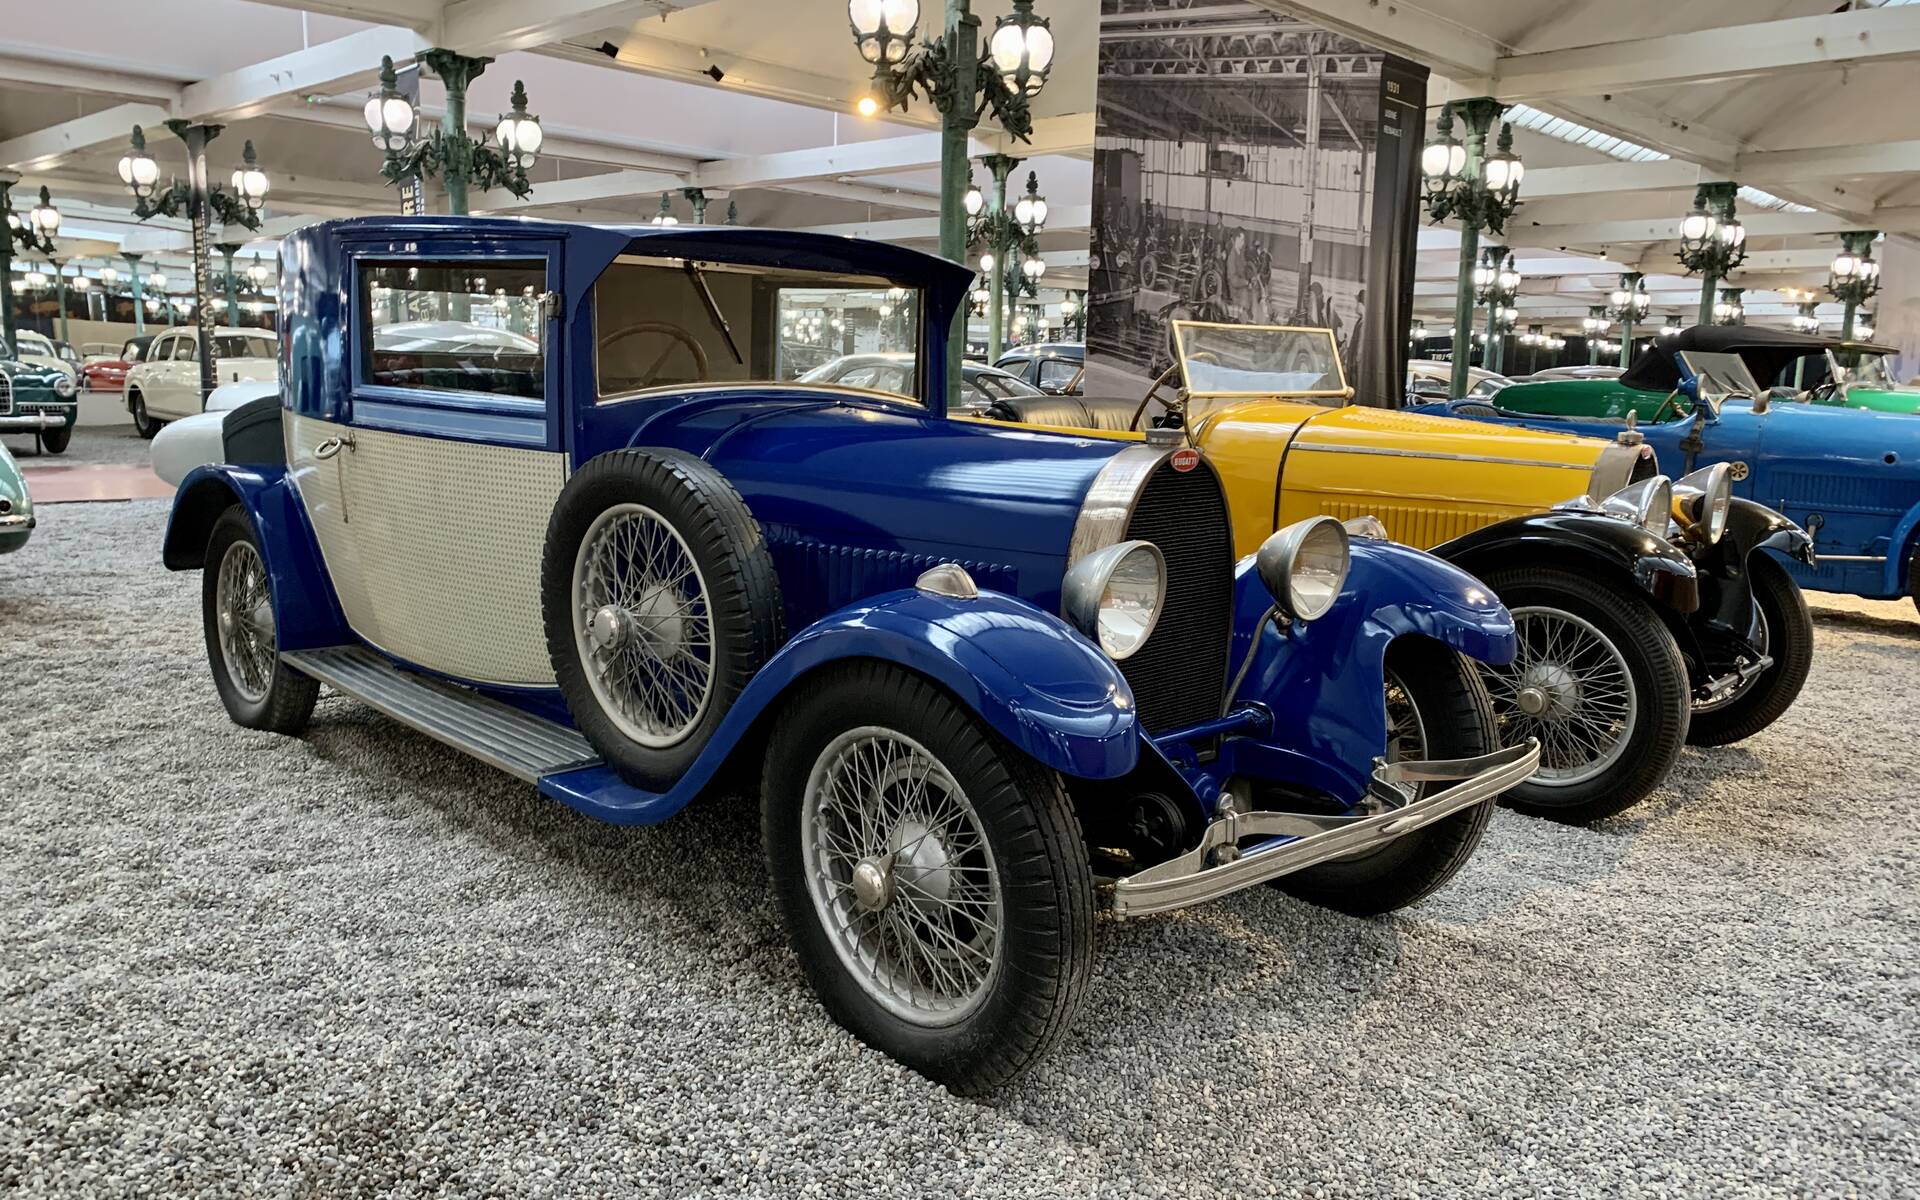 En photos : une centaine de Bugatti réunies dans un même musée 503048-en-photos-des-dizaines-de-bugatti-reunies-dans-un-meme-musee